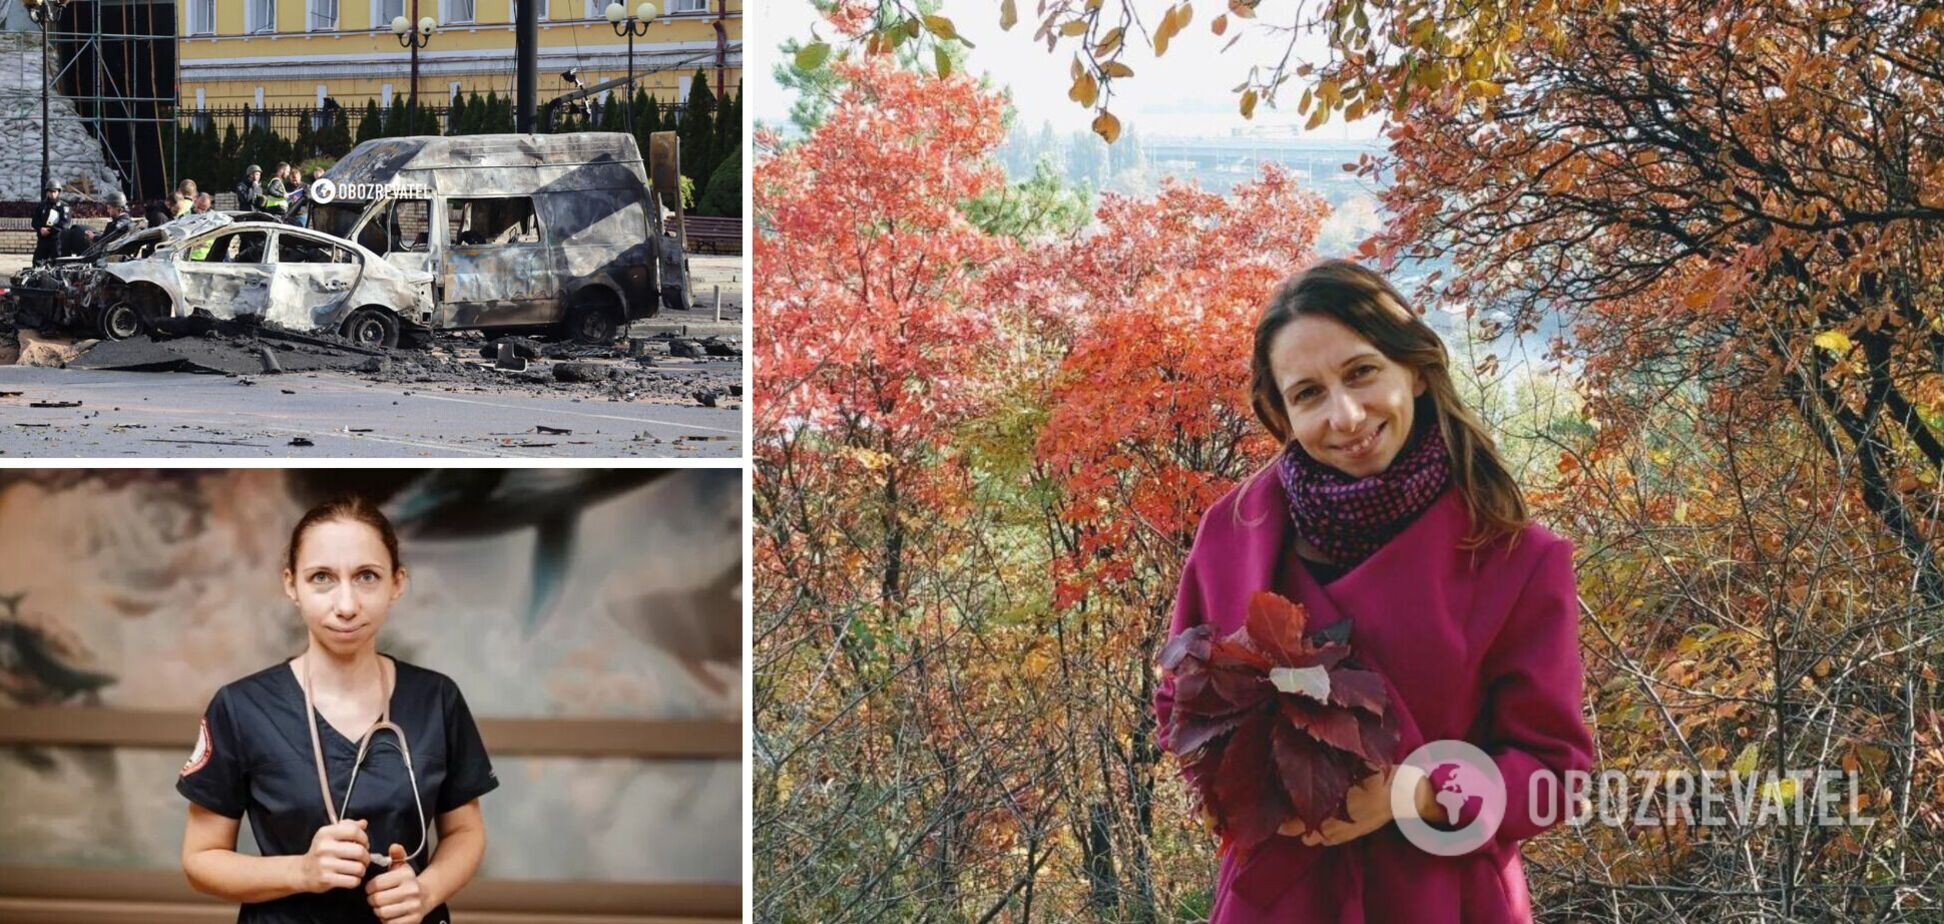 Від удару російської ракети її машина спалахнула, як сірник: у Києві загинула лікарка Охматдиту, син залишився сиротою